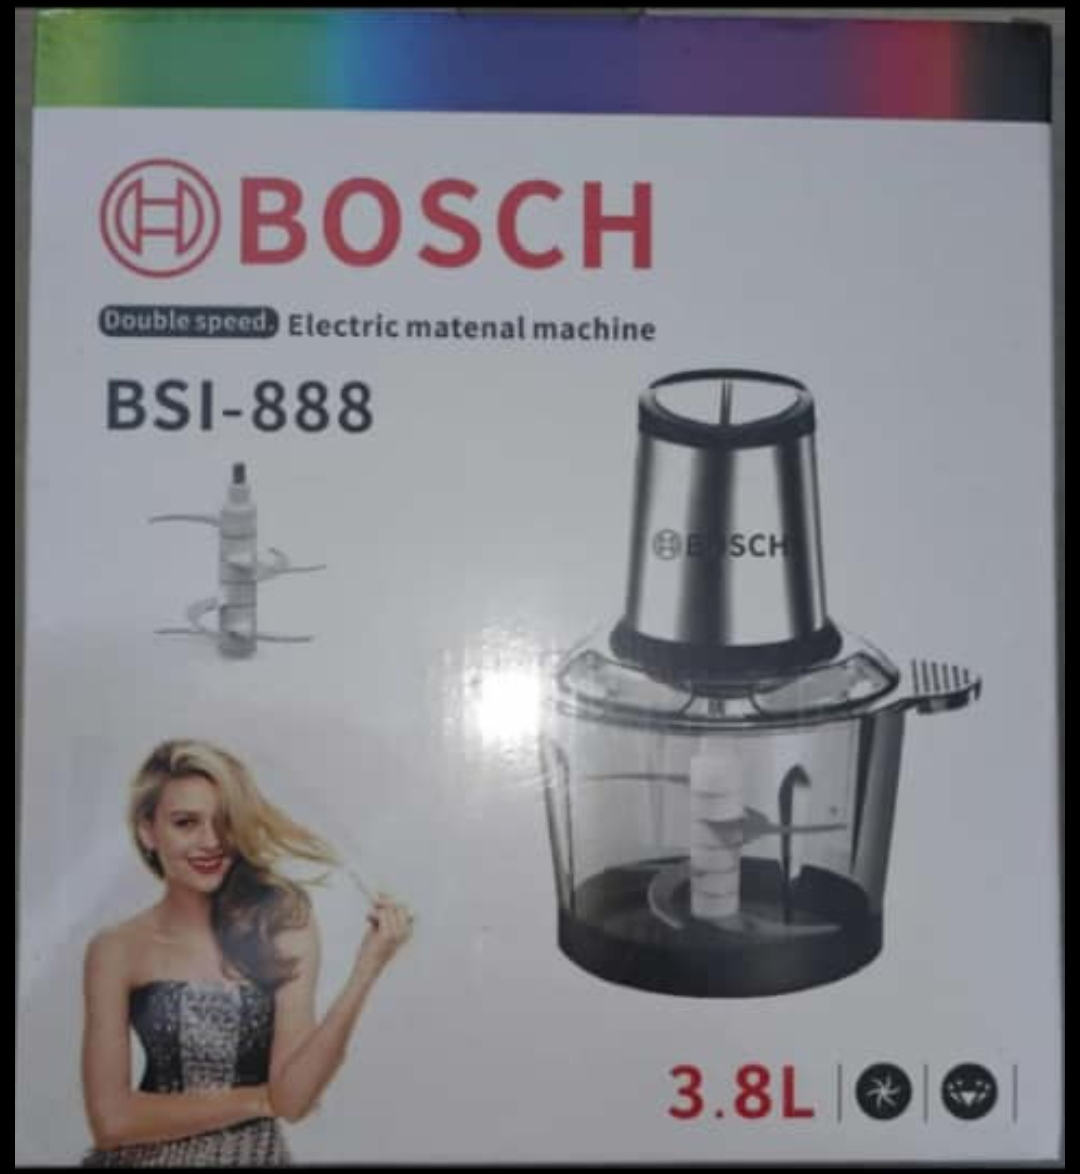 خردکن بوش 6 تیغه مدل BSI-888 ظرفیت 3/8 لیتری ظرف شیشه ای